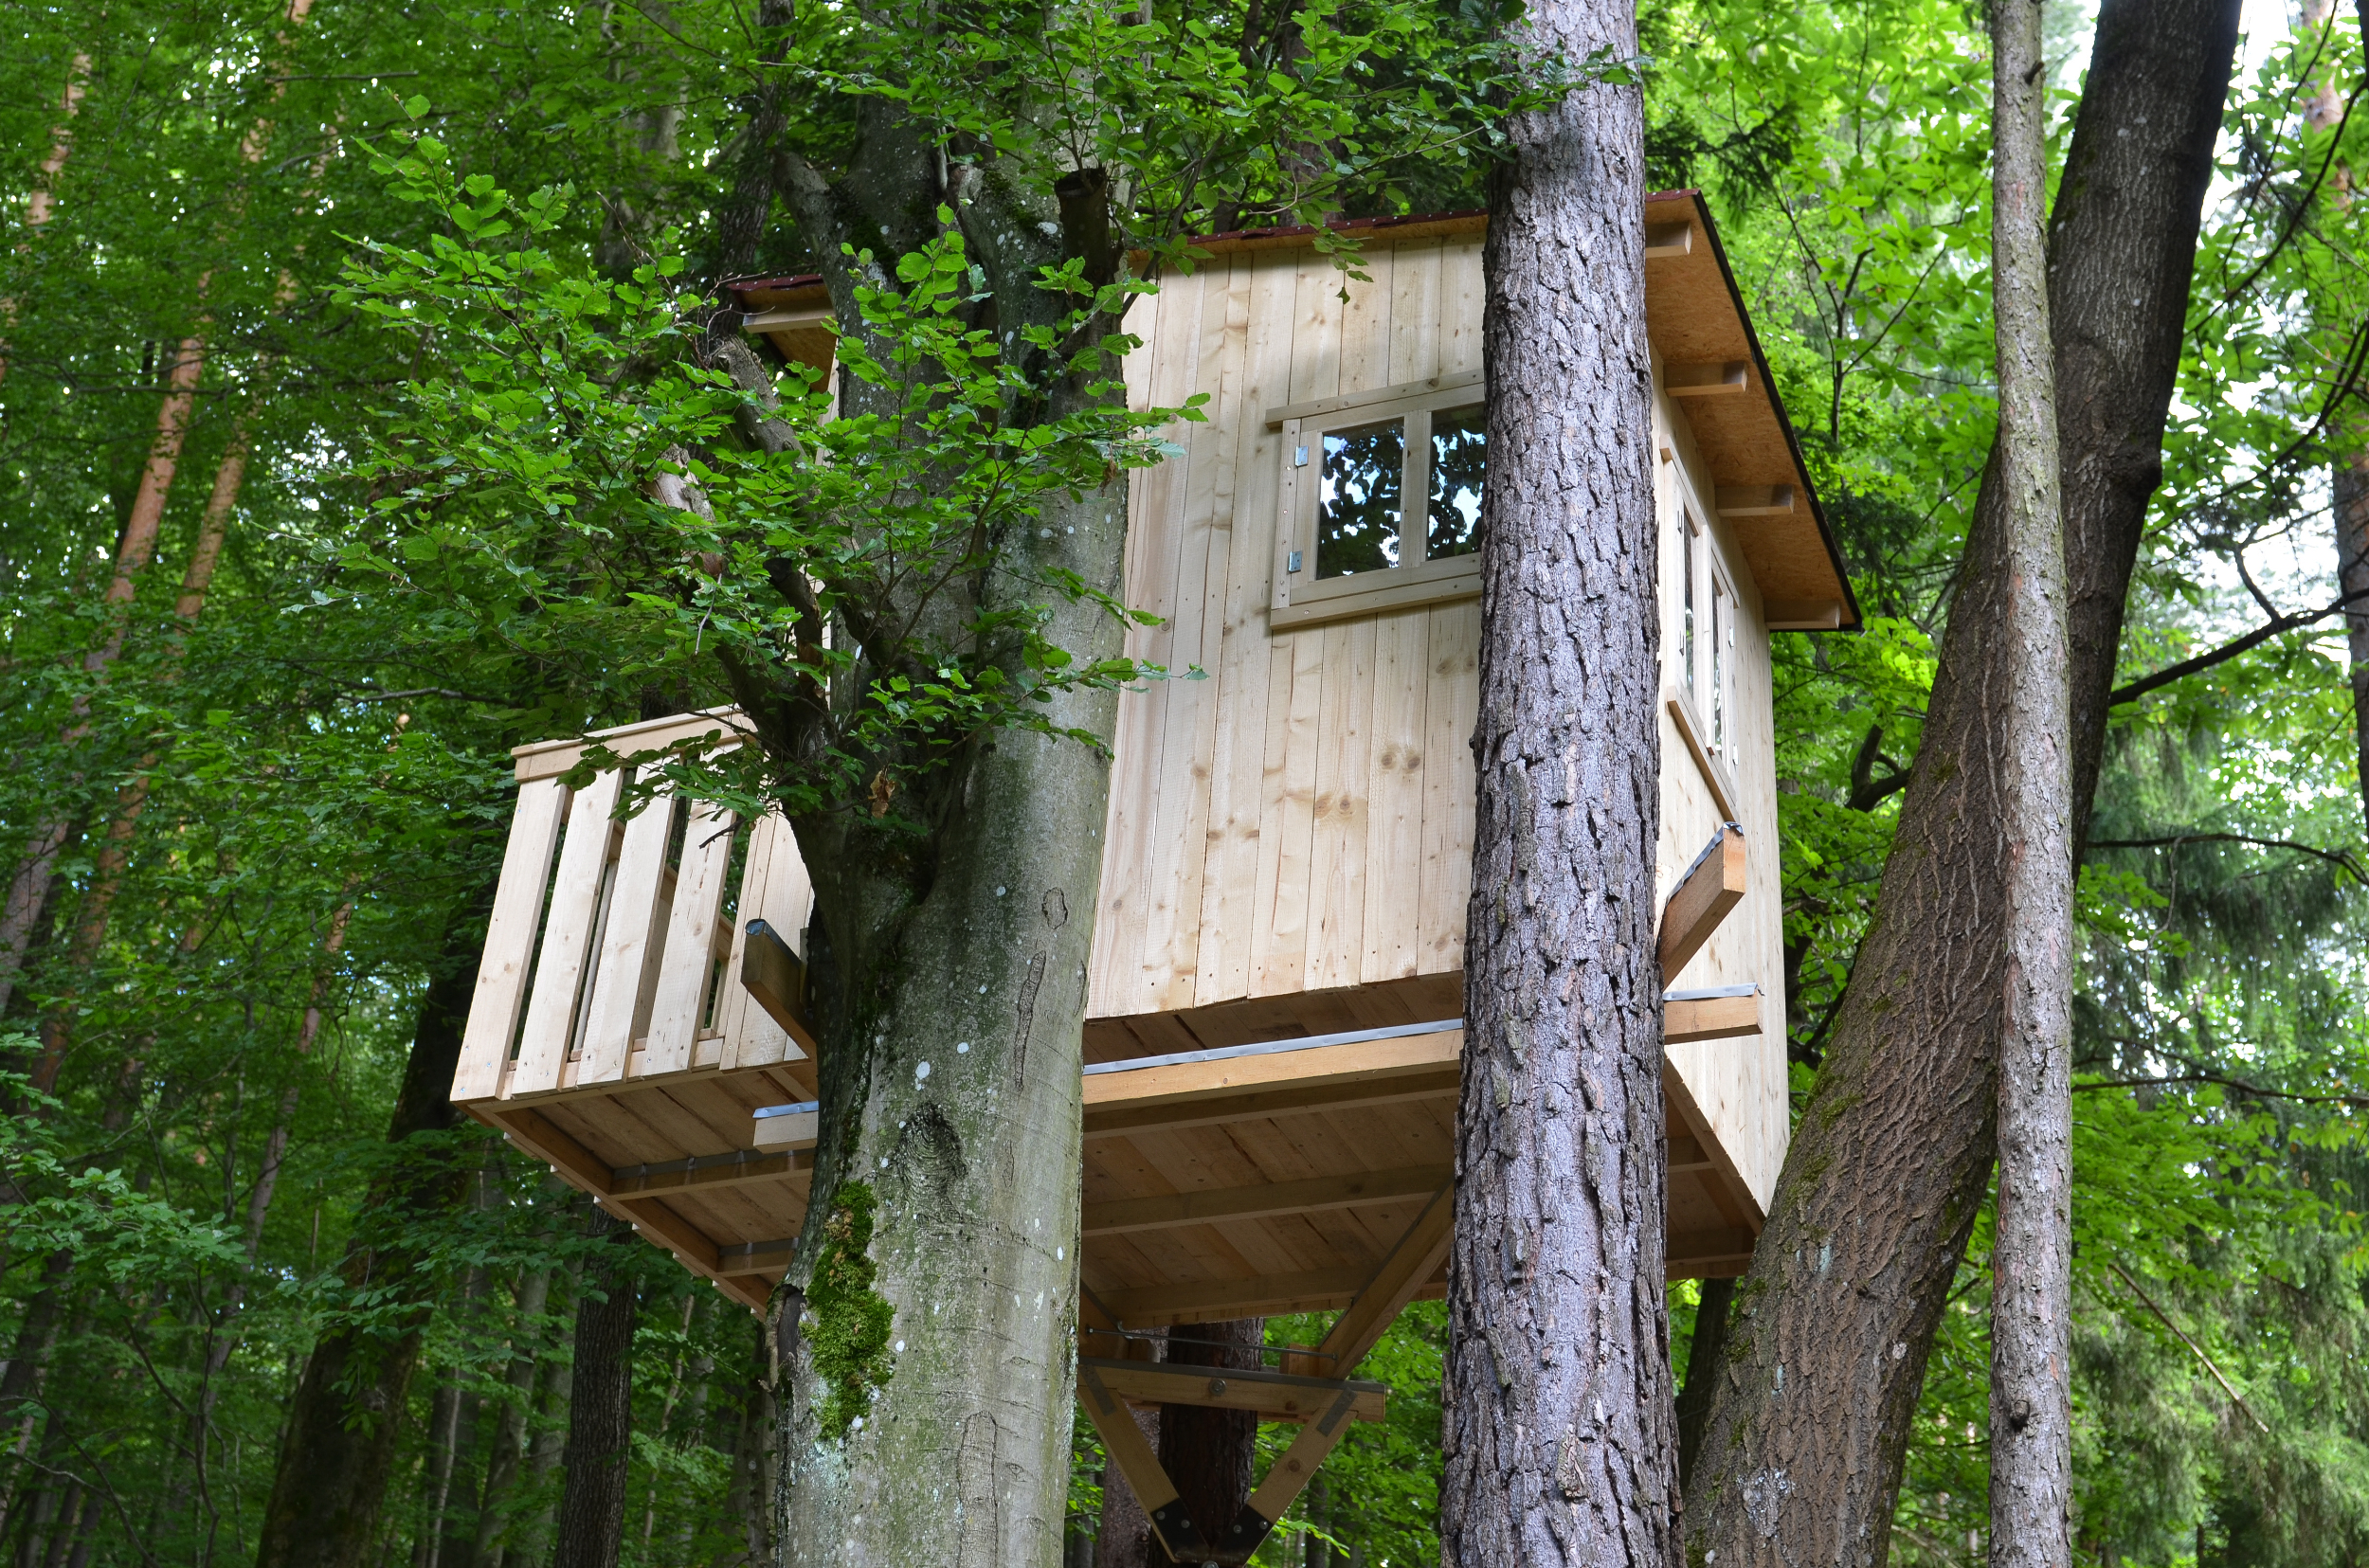 La cabane en bois est un rêve que petits et grands partagent. © photo 5000, Adobe Stock